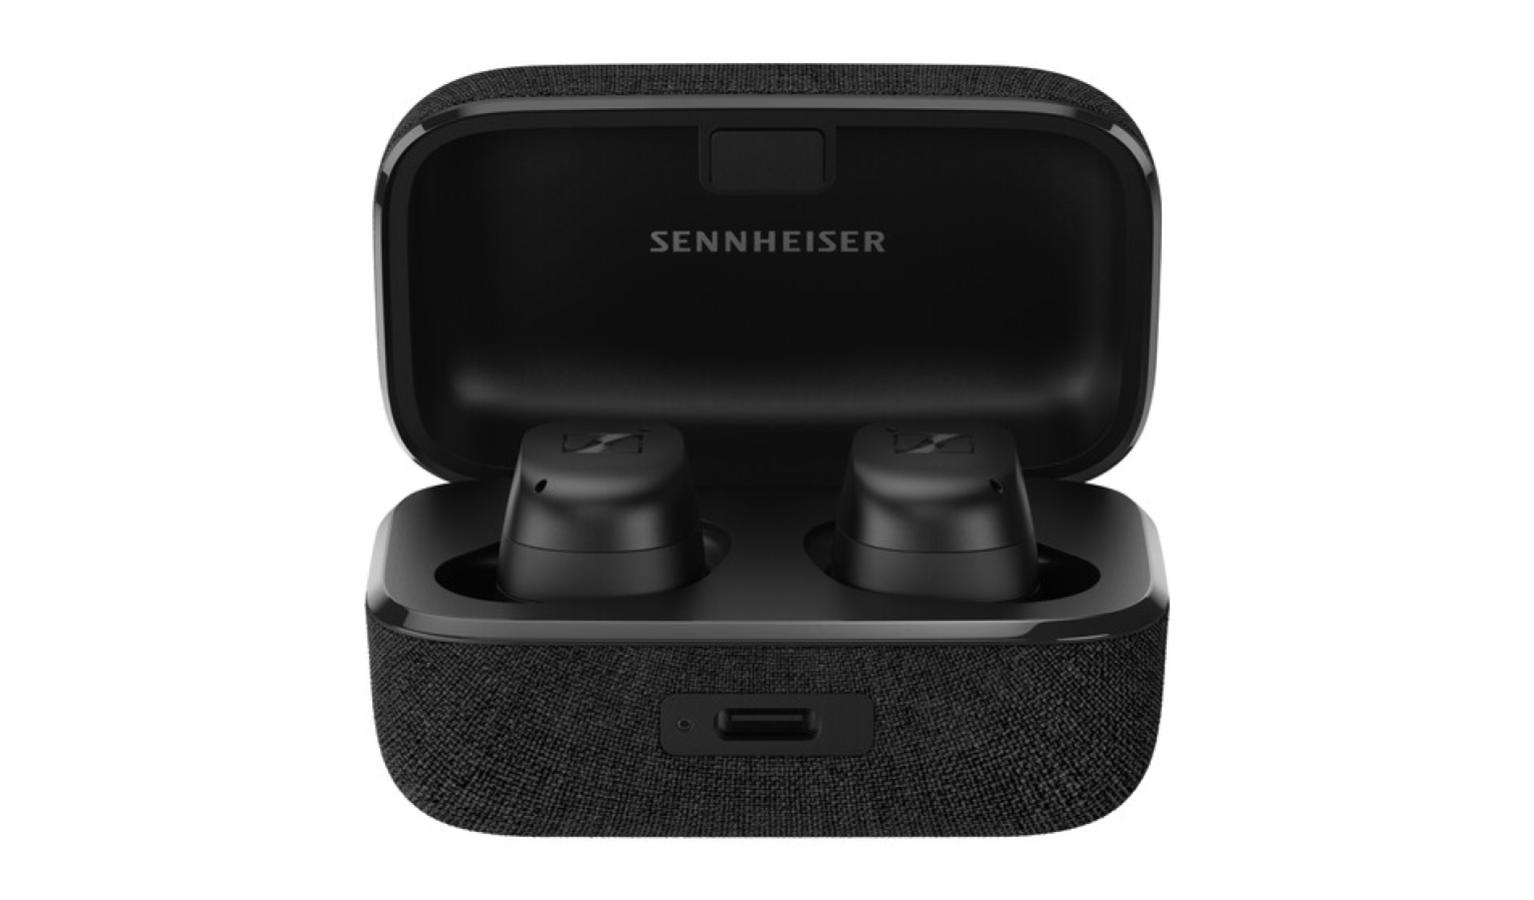 Sennheiser MOMENTUM True Wireless 3 Noise-Canceling In-Ear